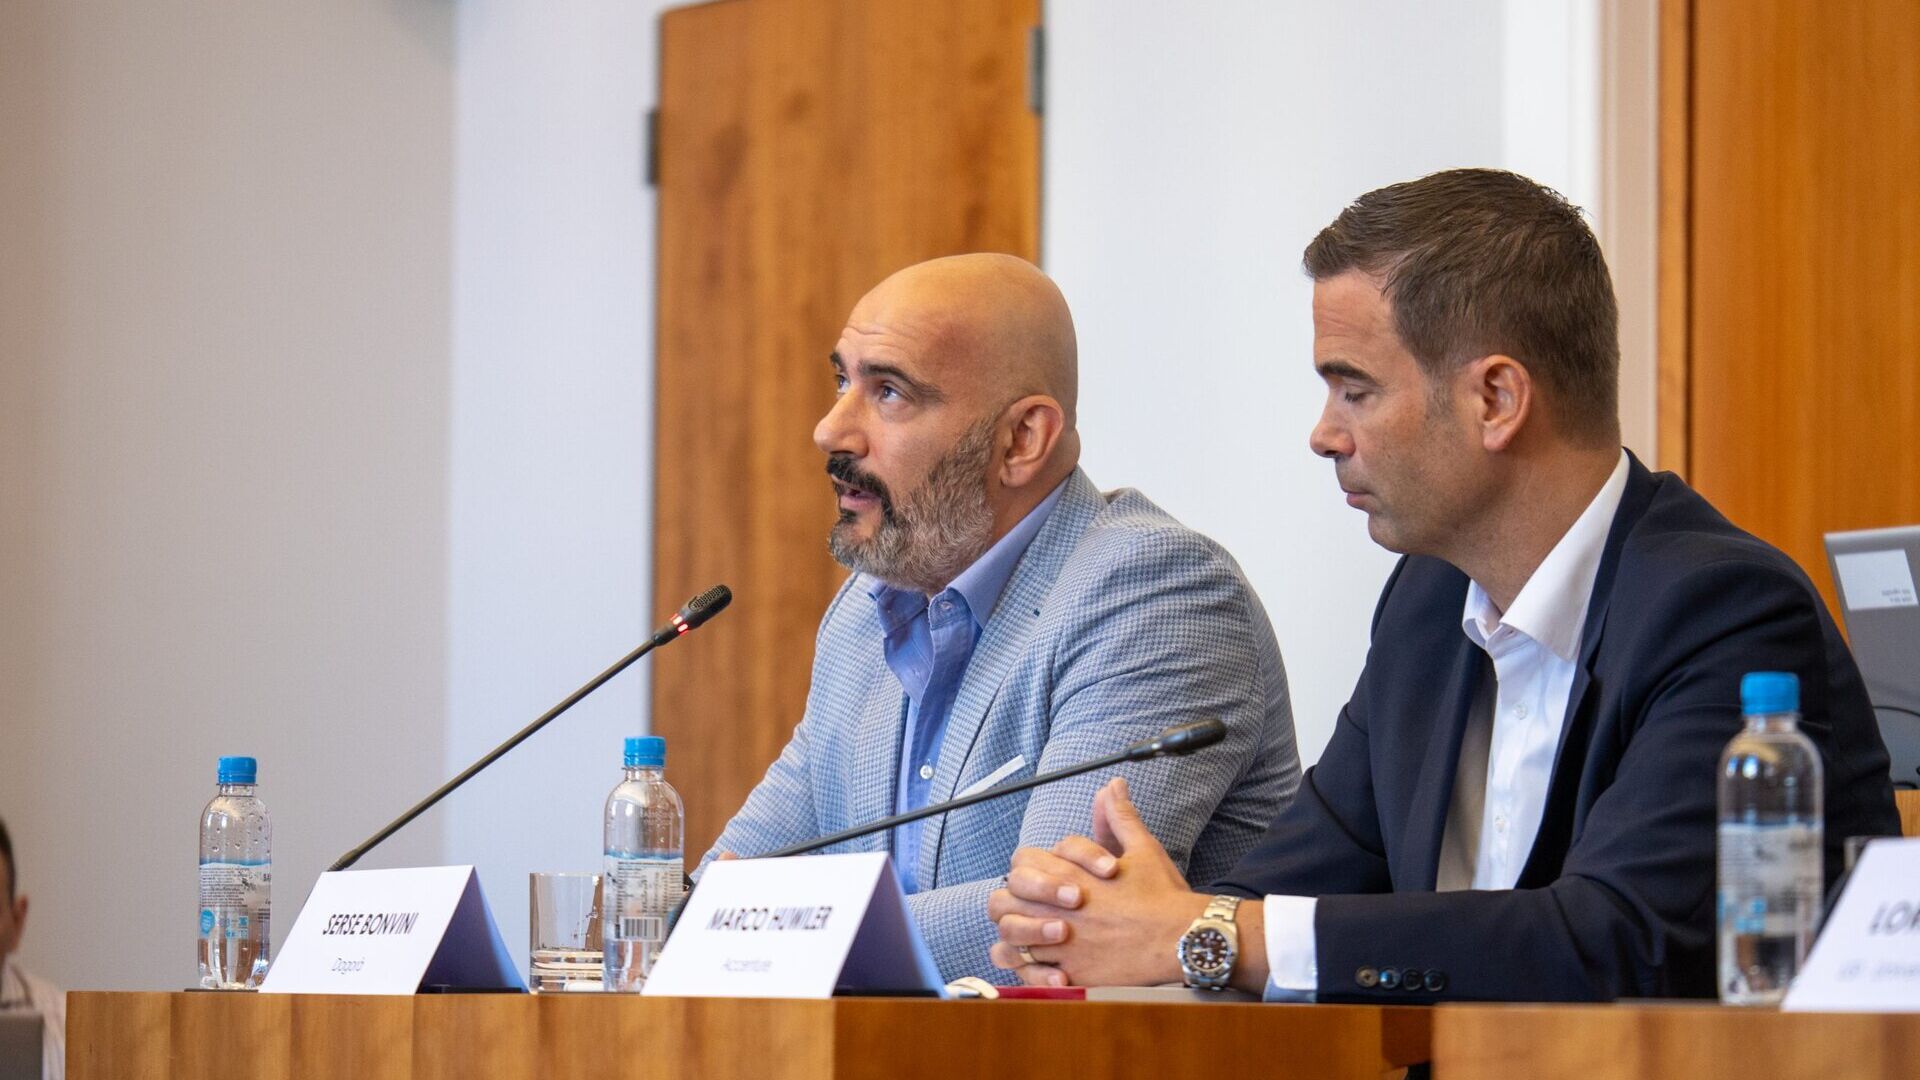 LTCC: Serse Bonvini, Giám đốc điều hành của Trung tâm Đổi mới Phong cách sống Dagorà và Marco Huwiler, Giám đốc Quốc gia của Accenture Thụy Sĩ